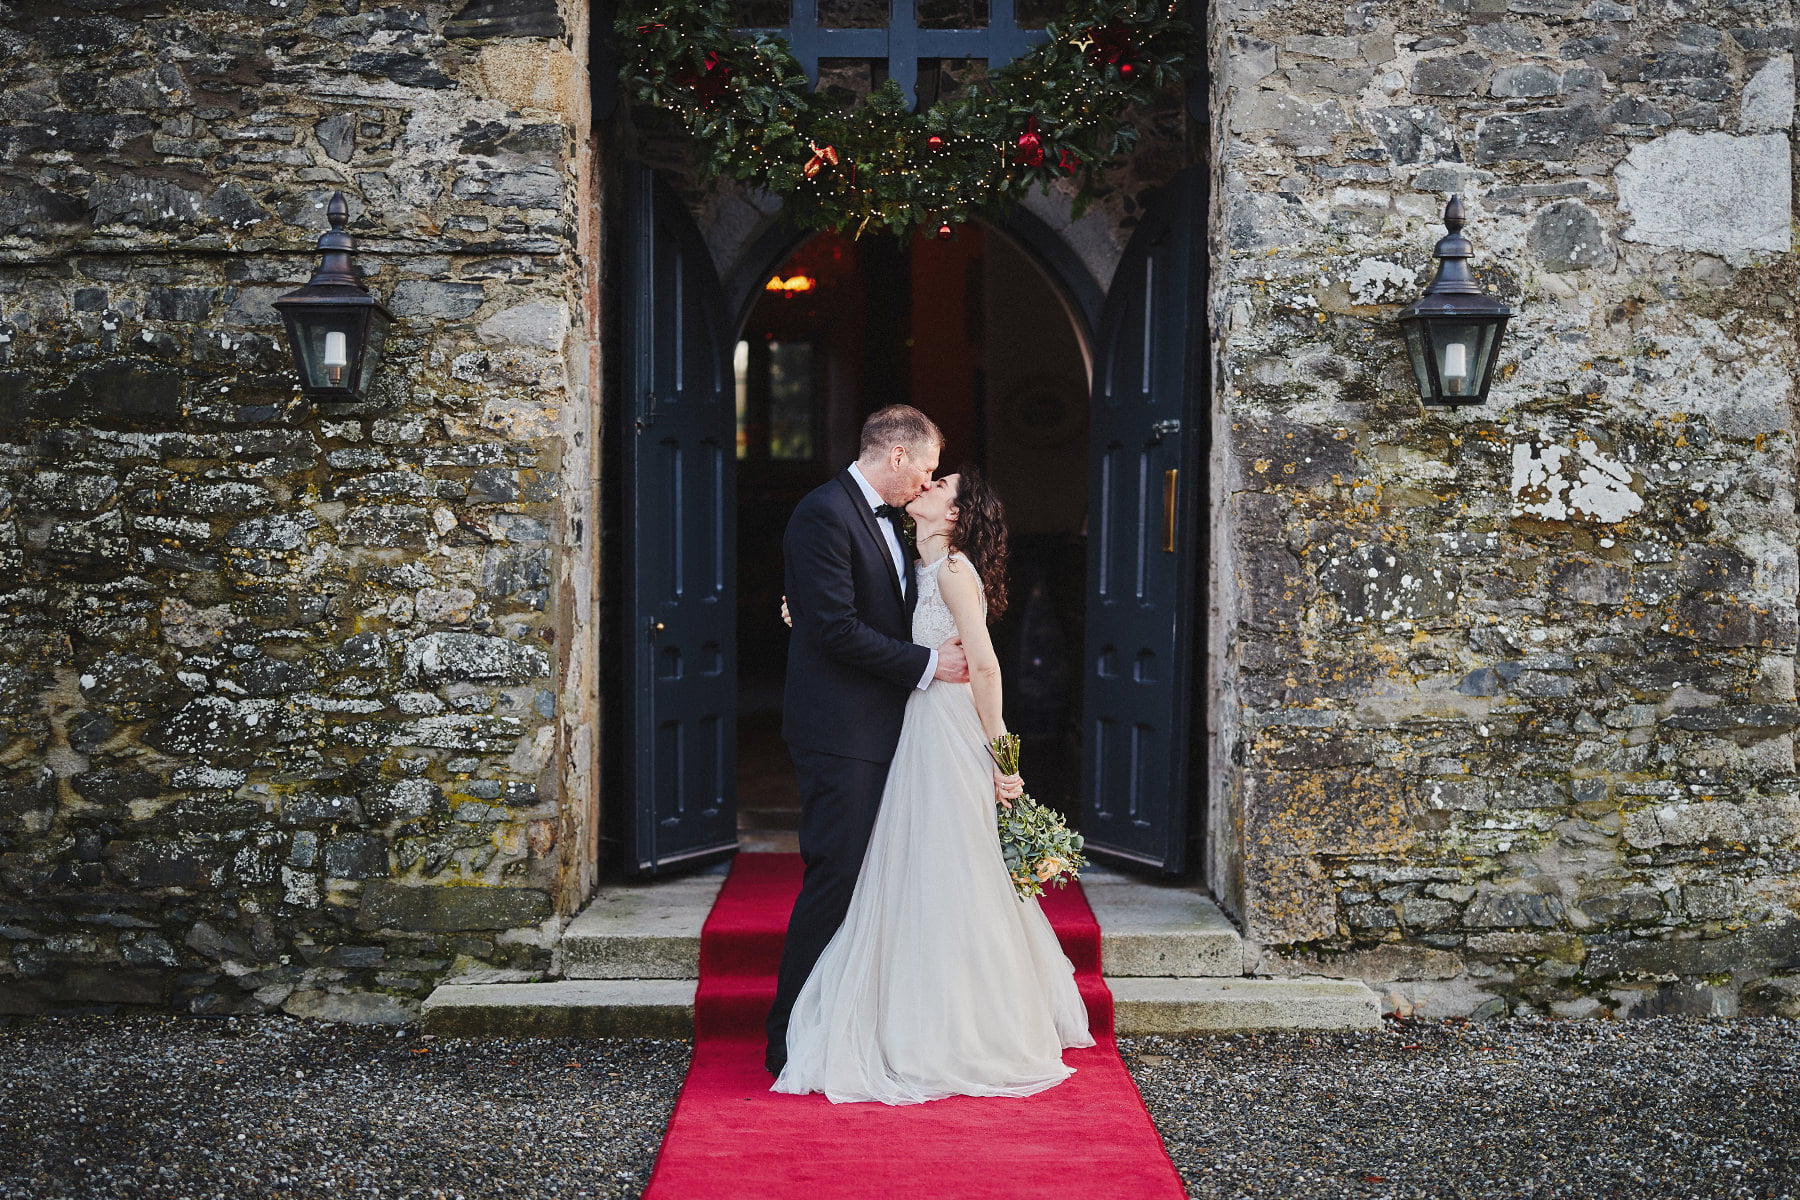 Plan a fairytale wedding at Kilkea Castle